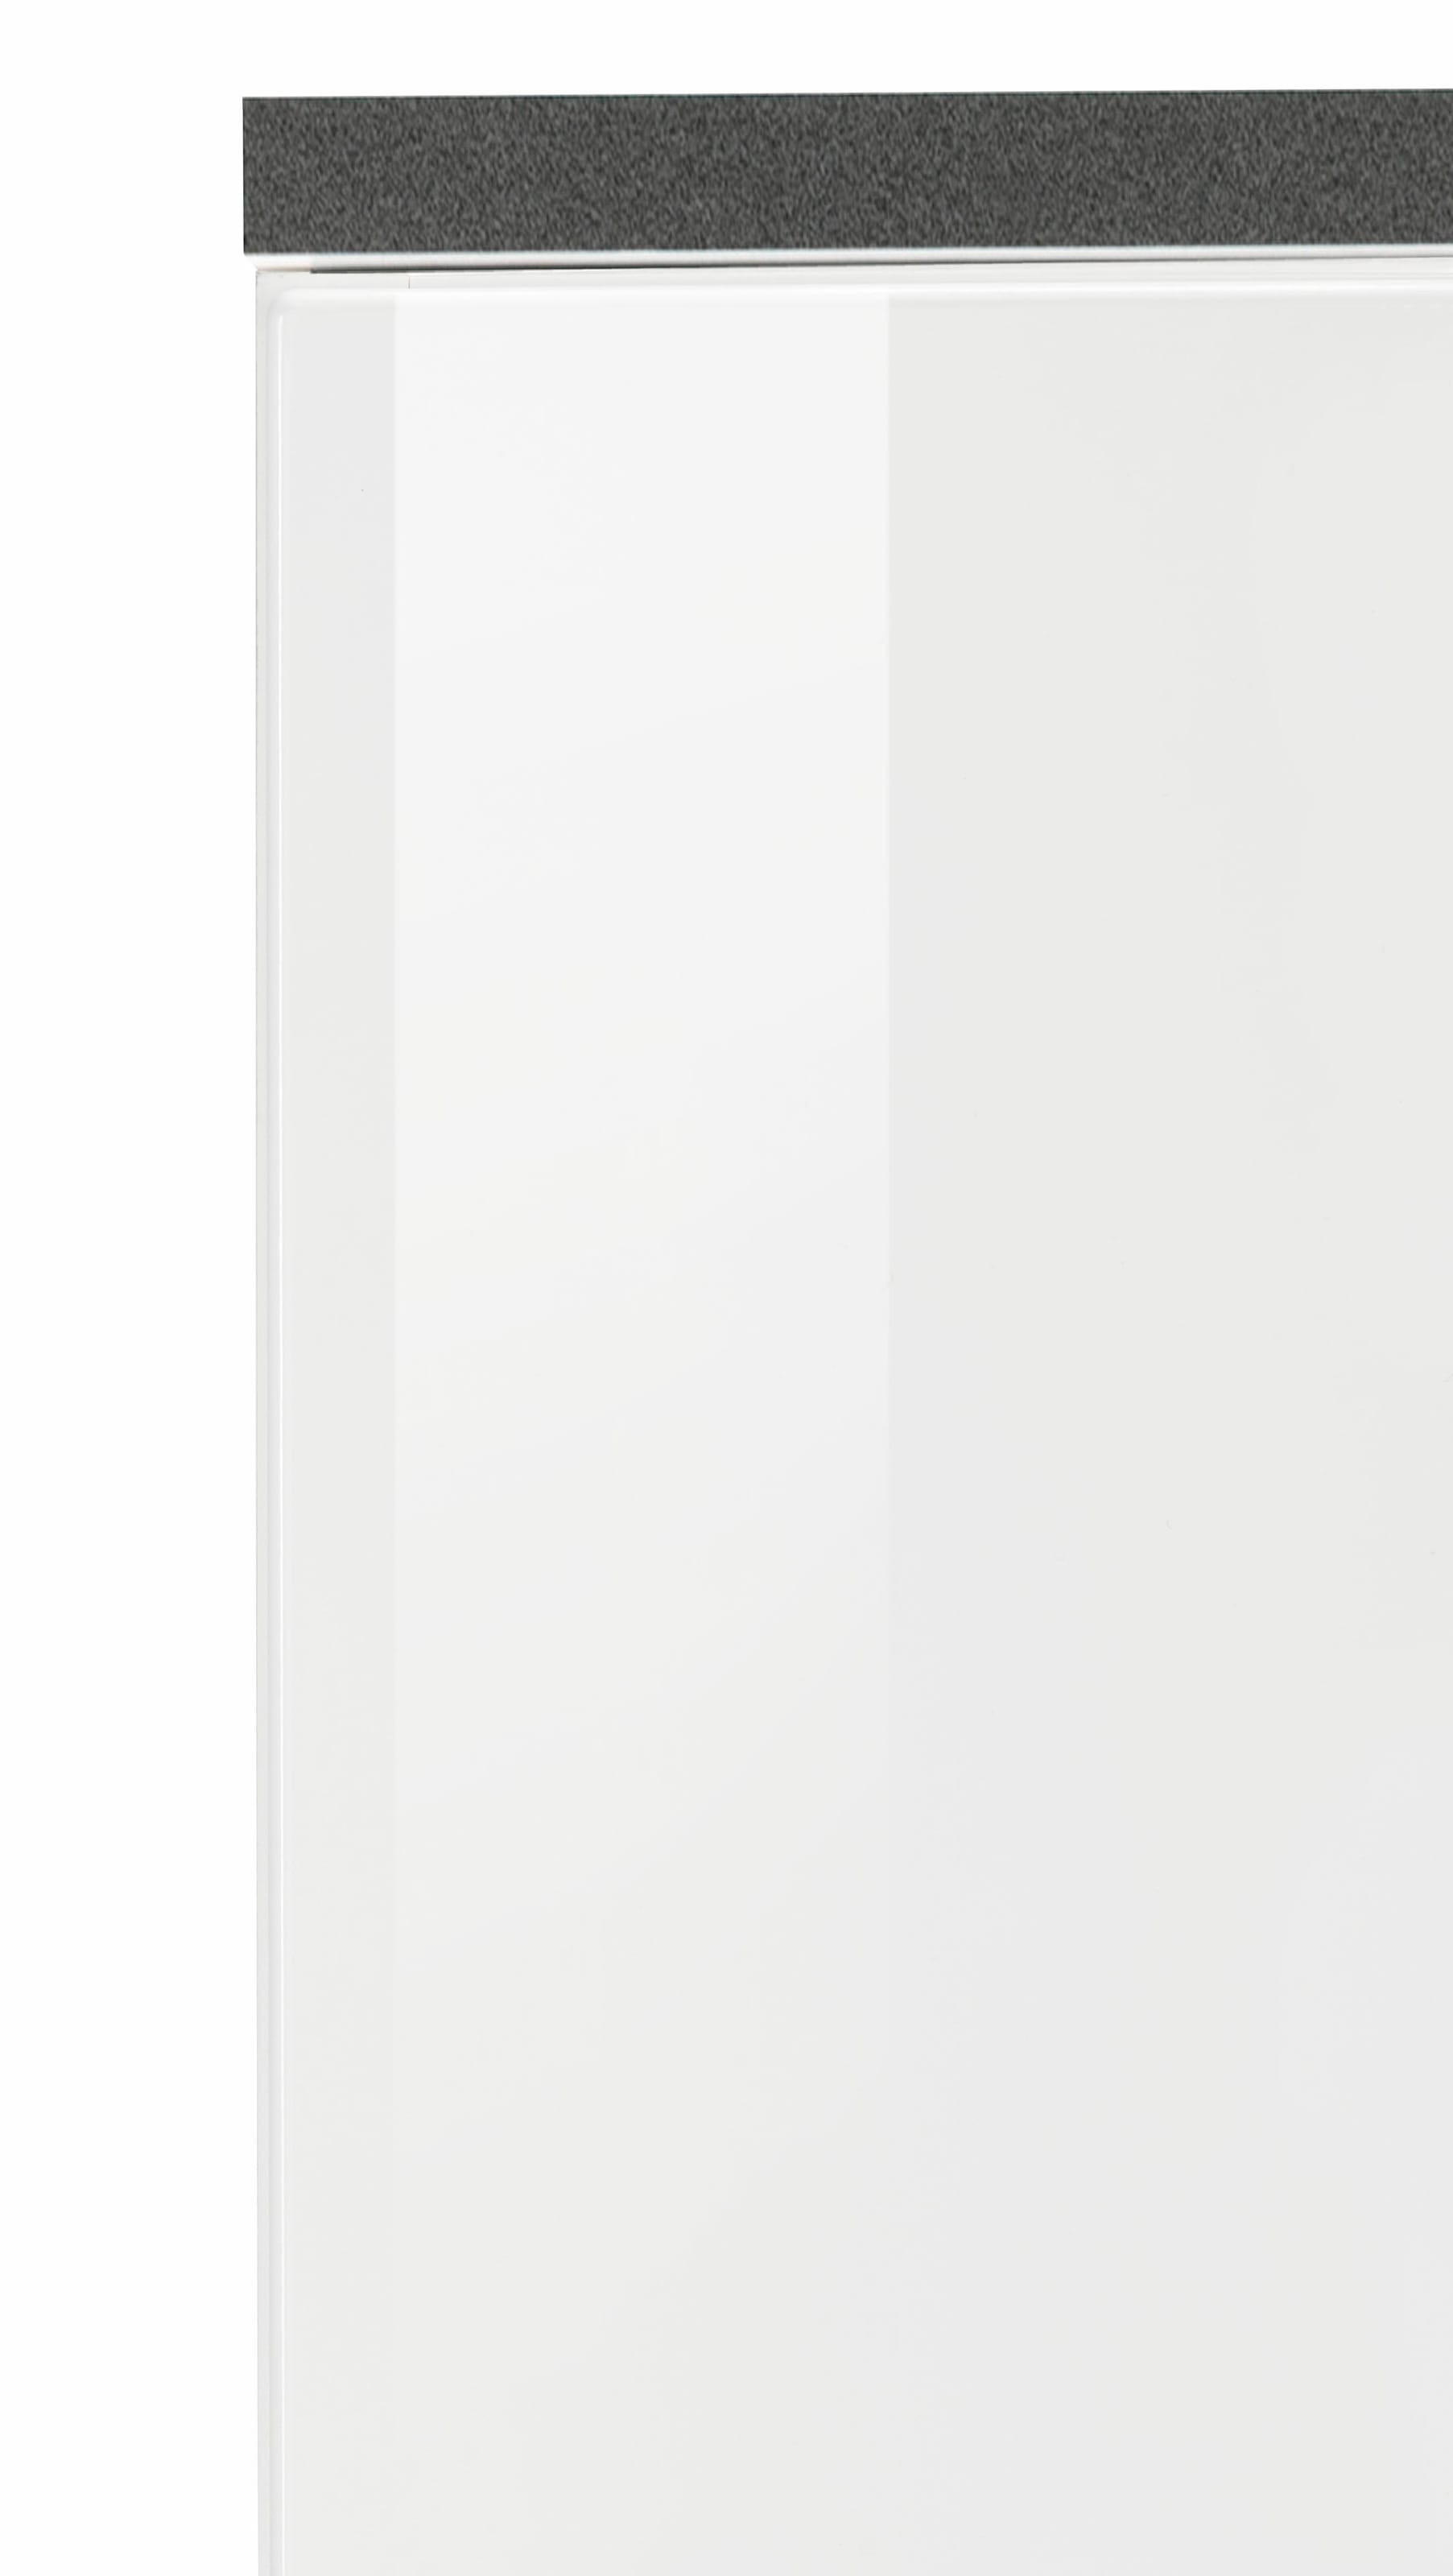 HELD MÖBEL Kühlumbauschrank »Trient«, 60 cm breit